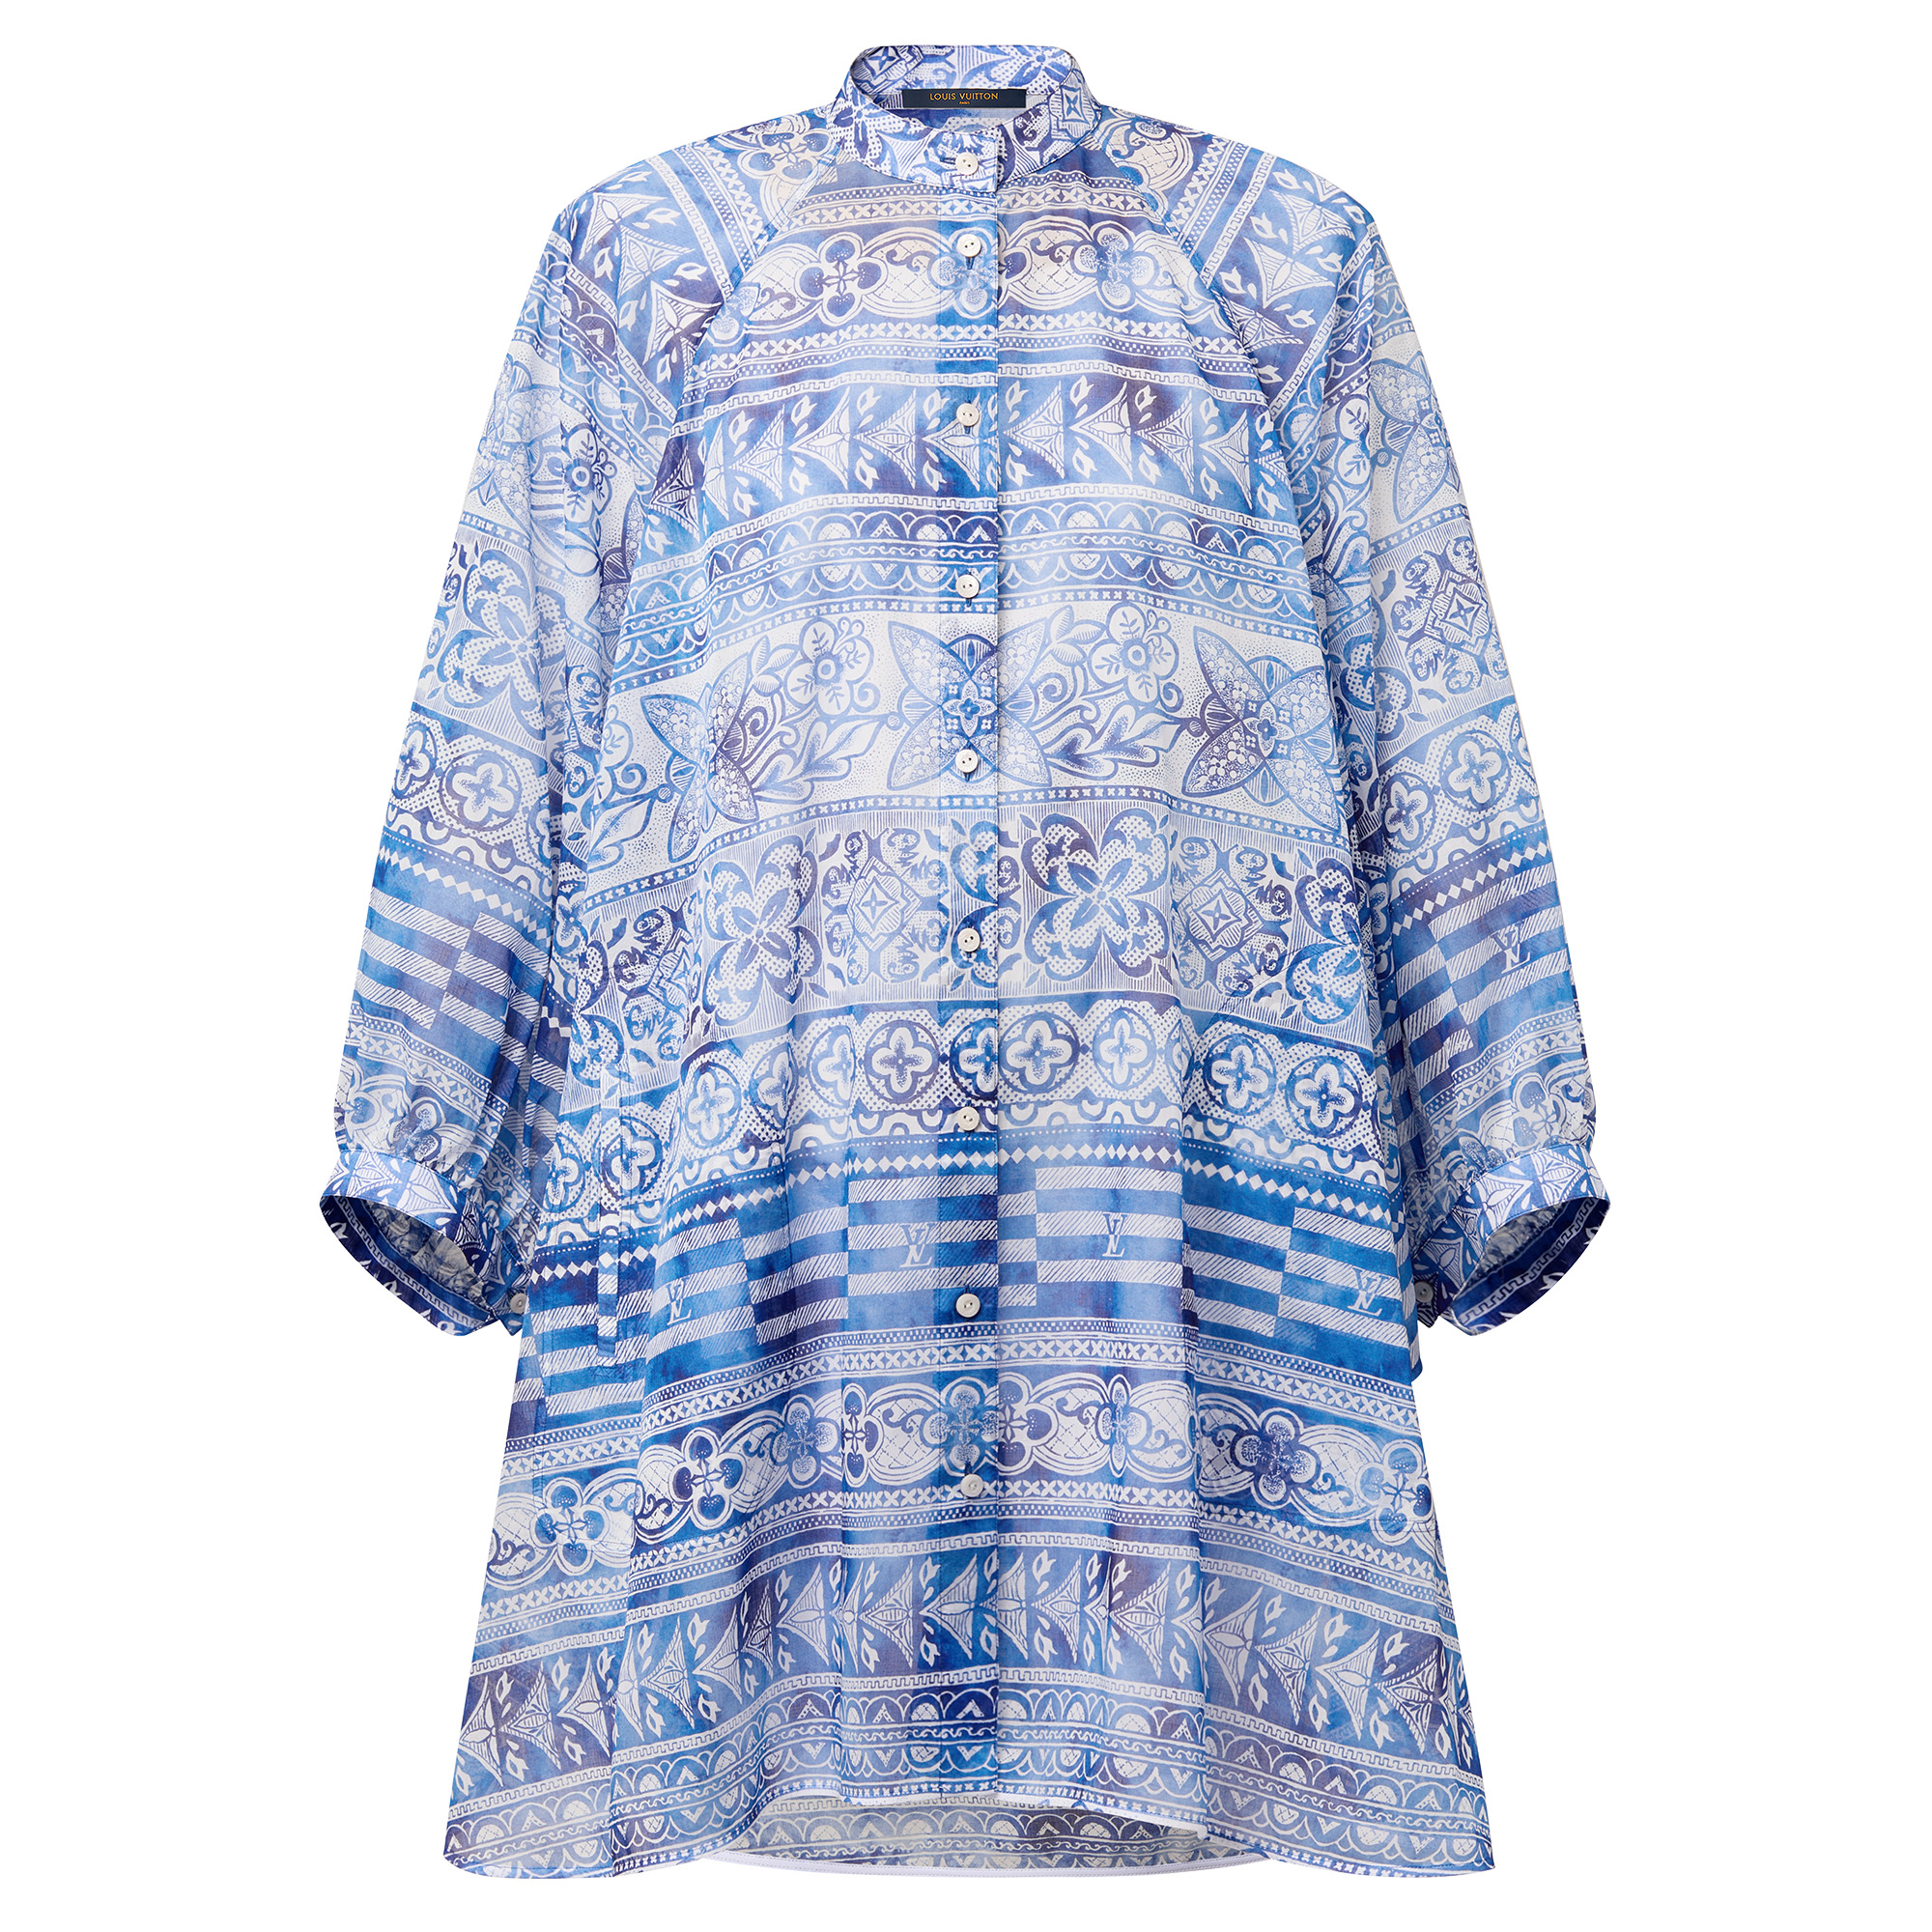 Monogram Tile Batwing Shirt Dress - 1